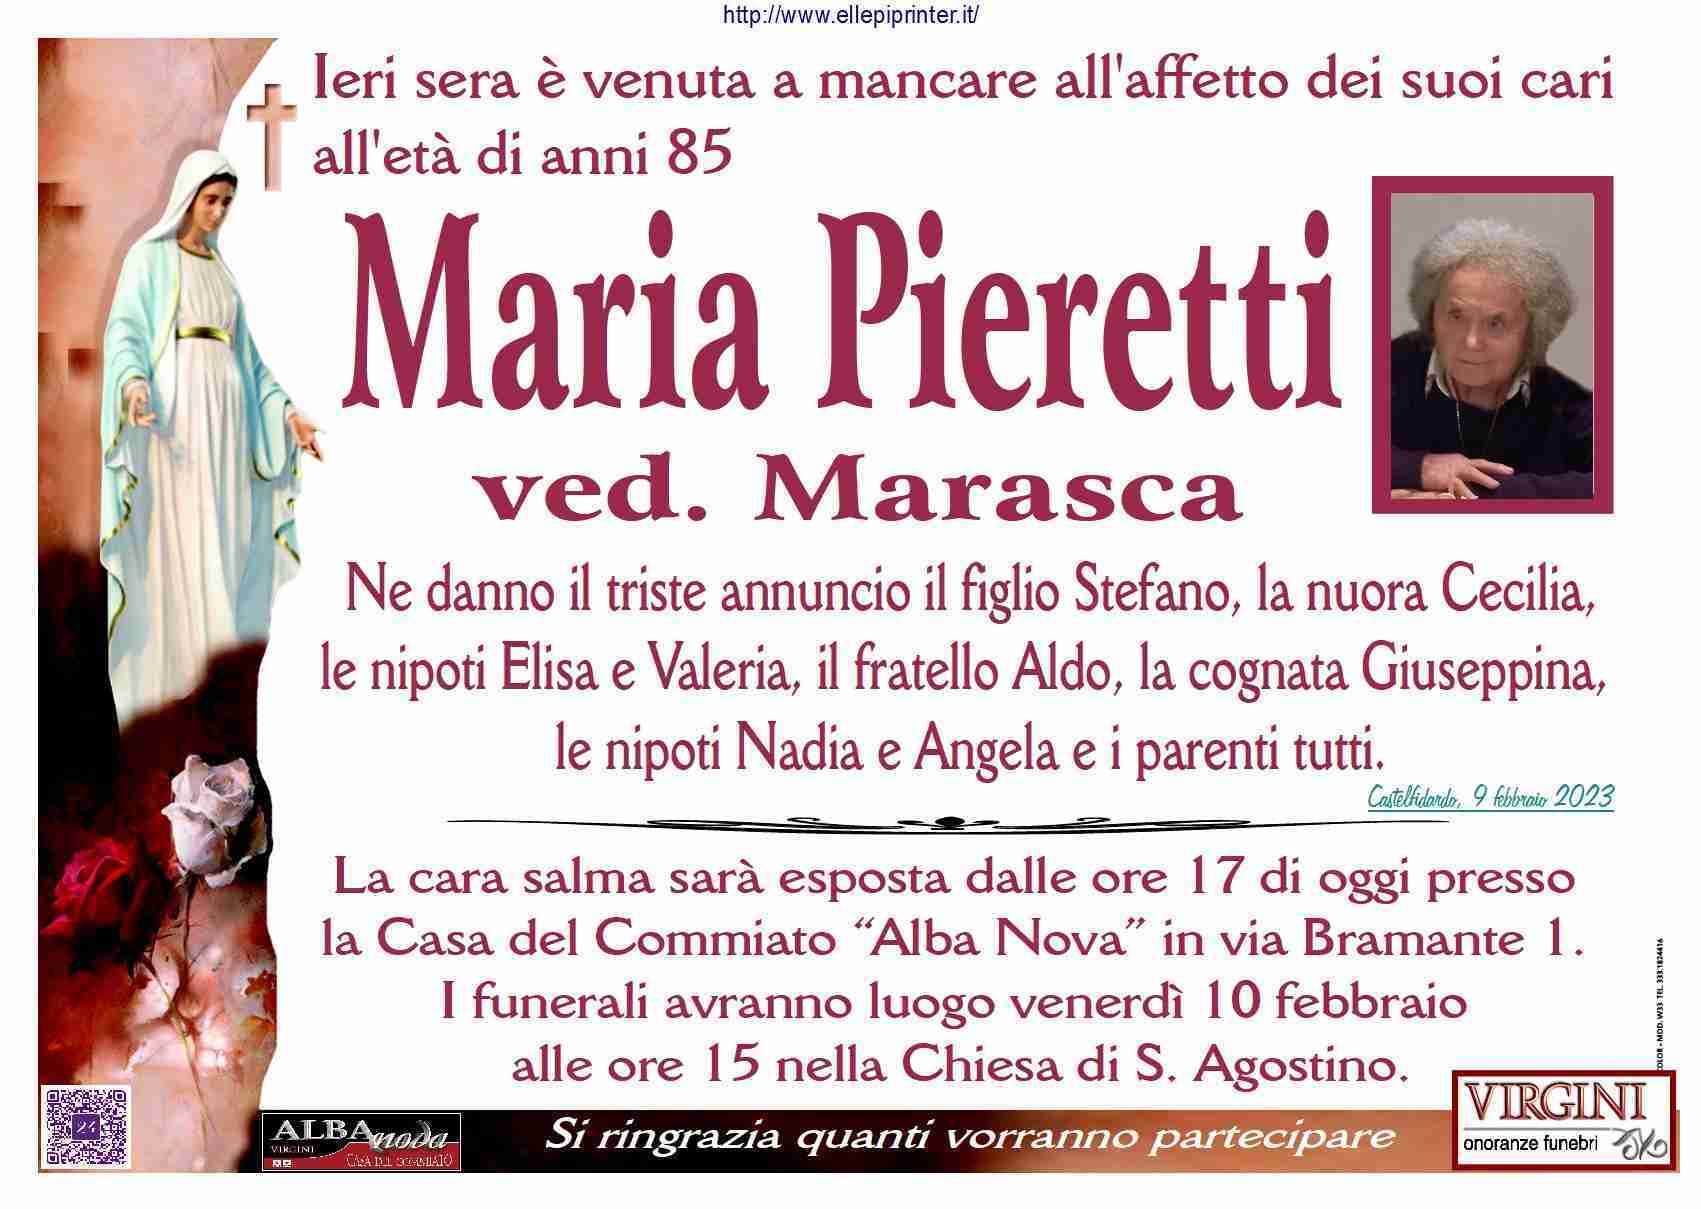 Maria Pieretti